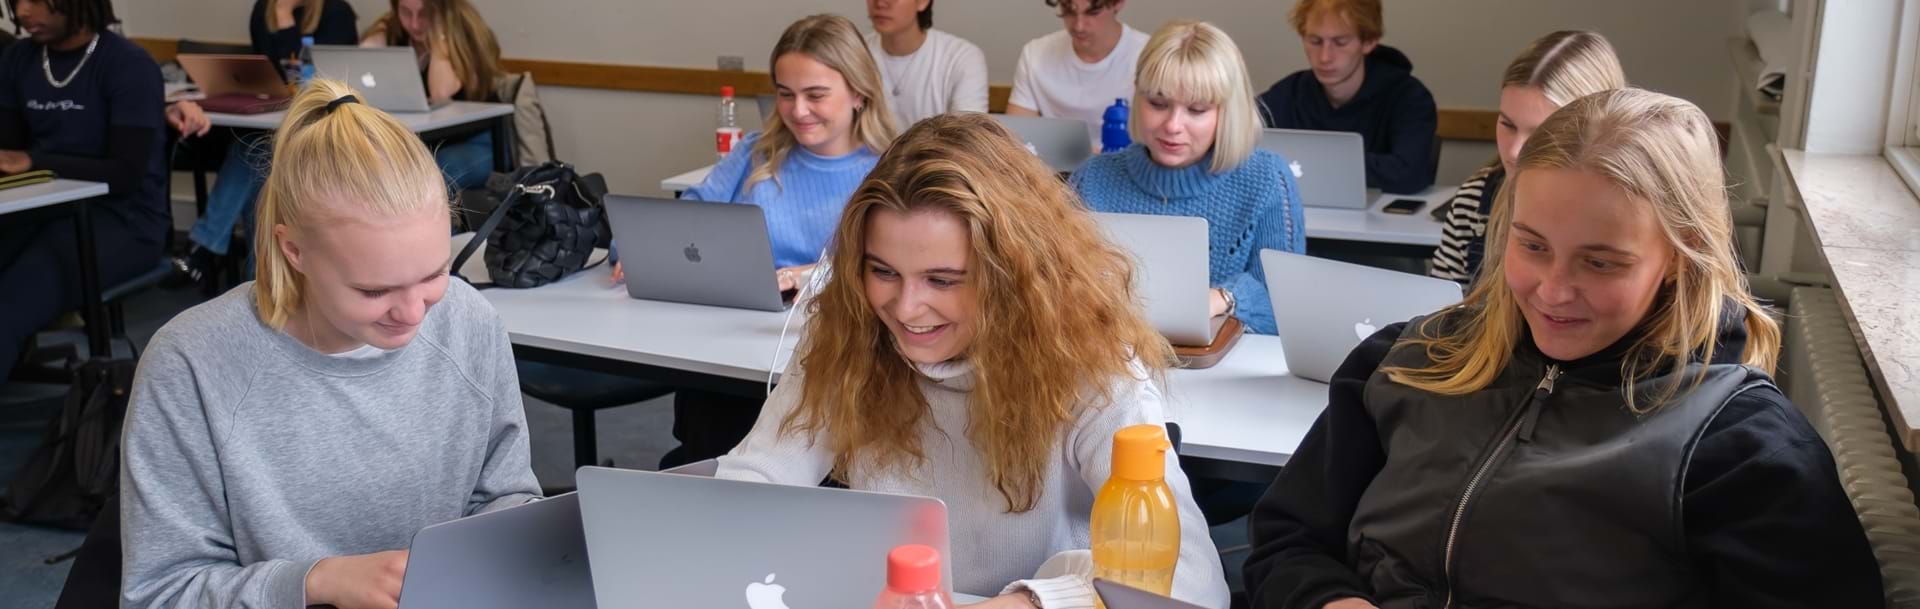 Elever laver opgaver på deres computere